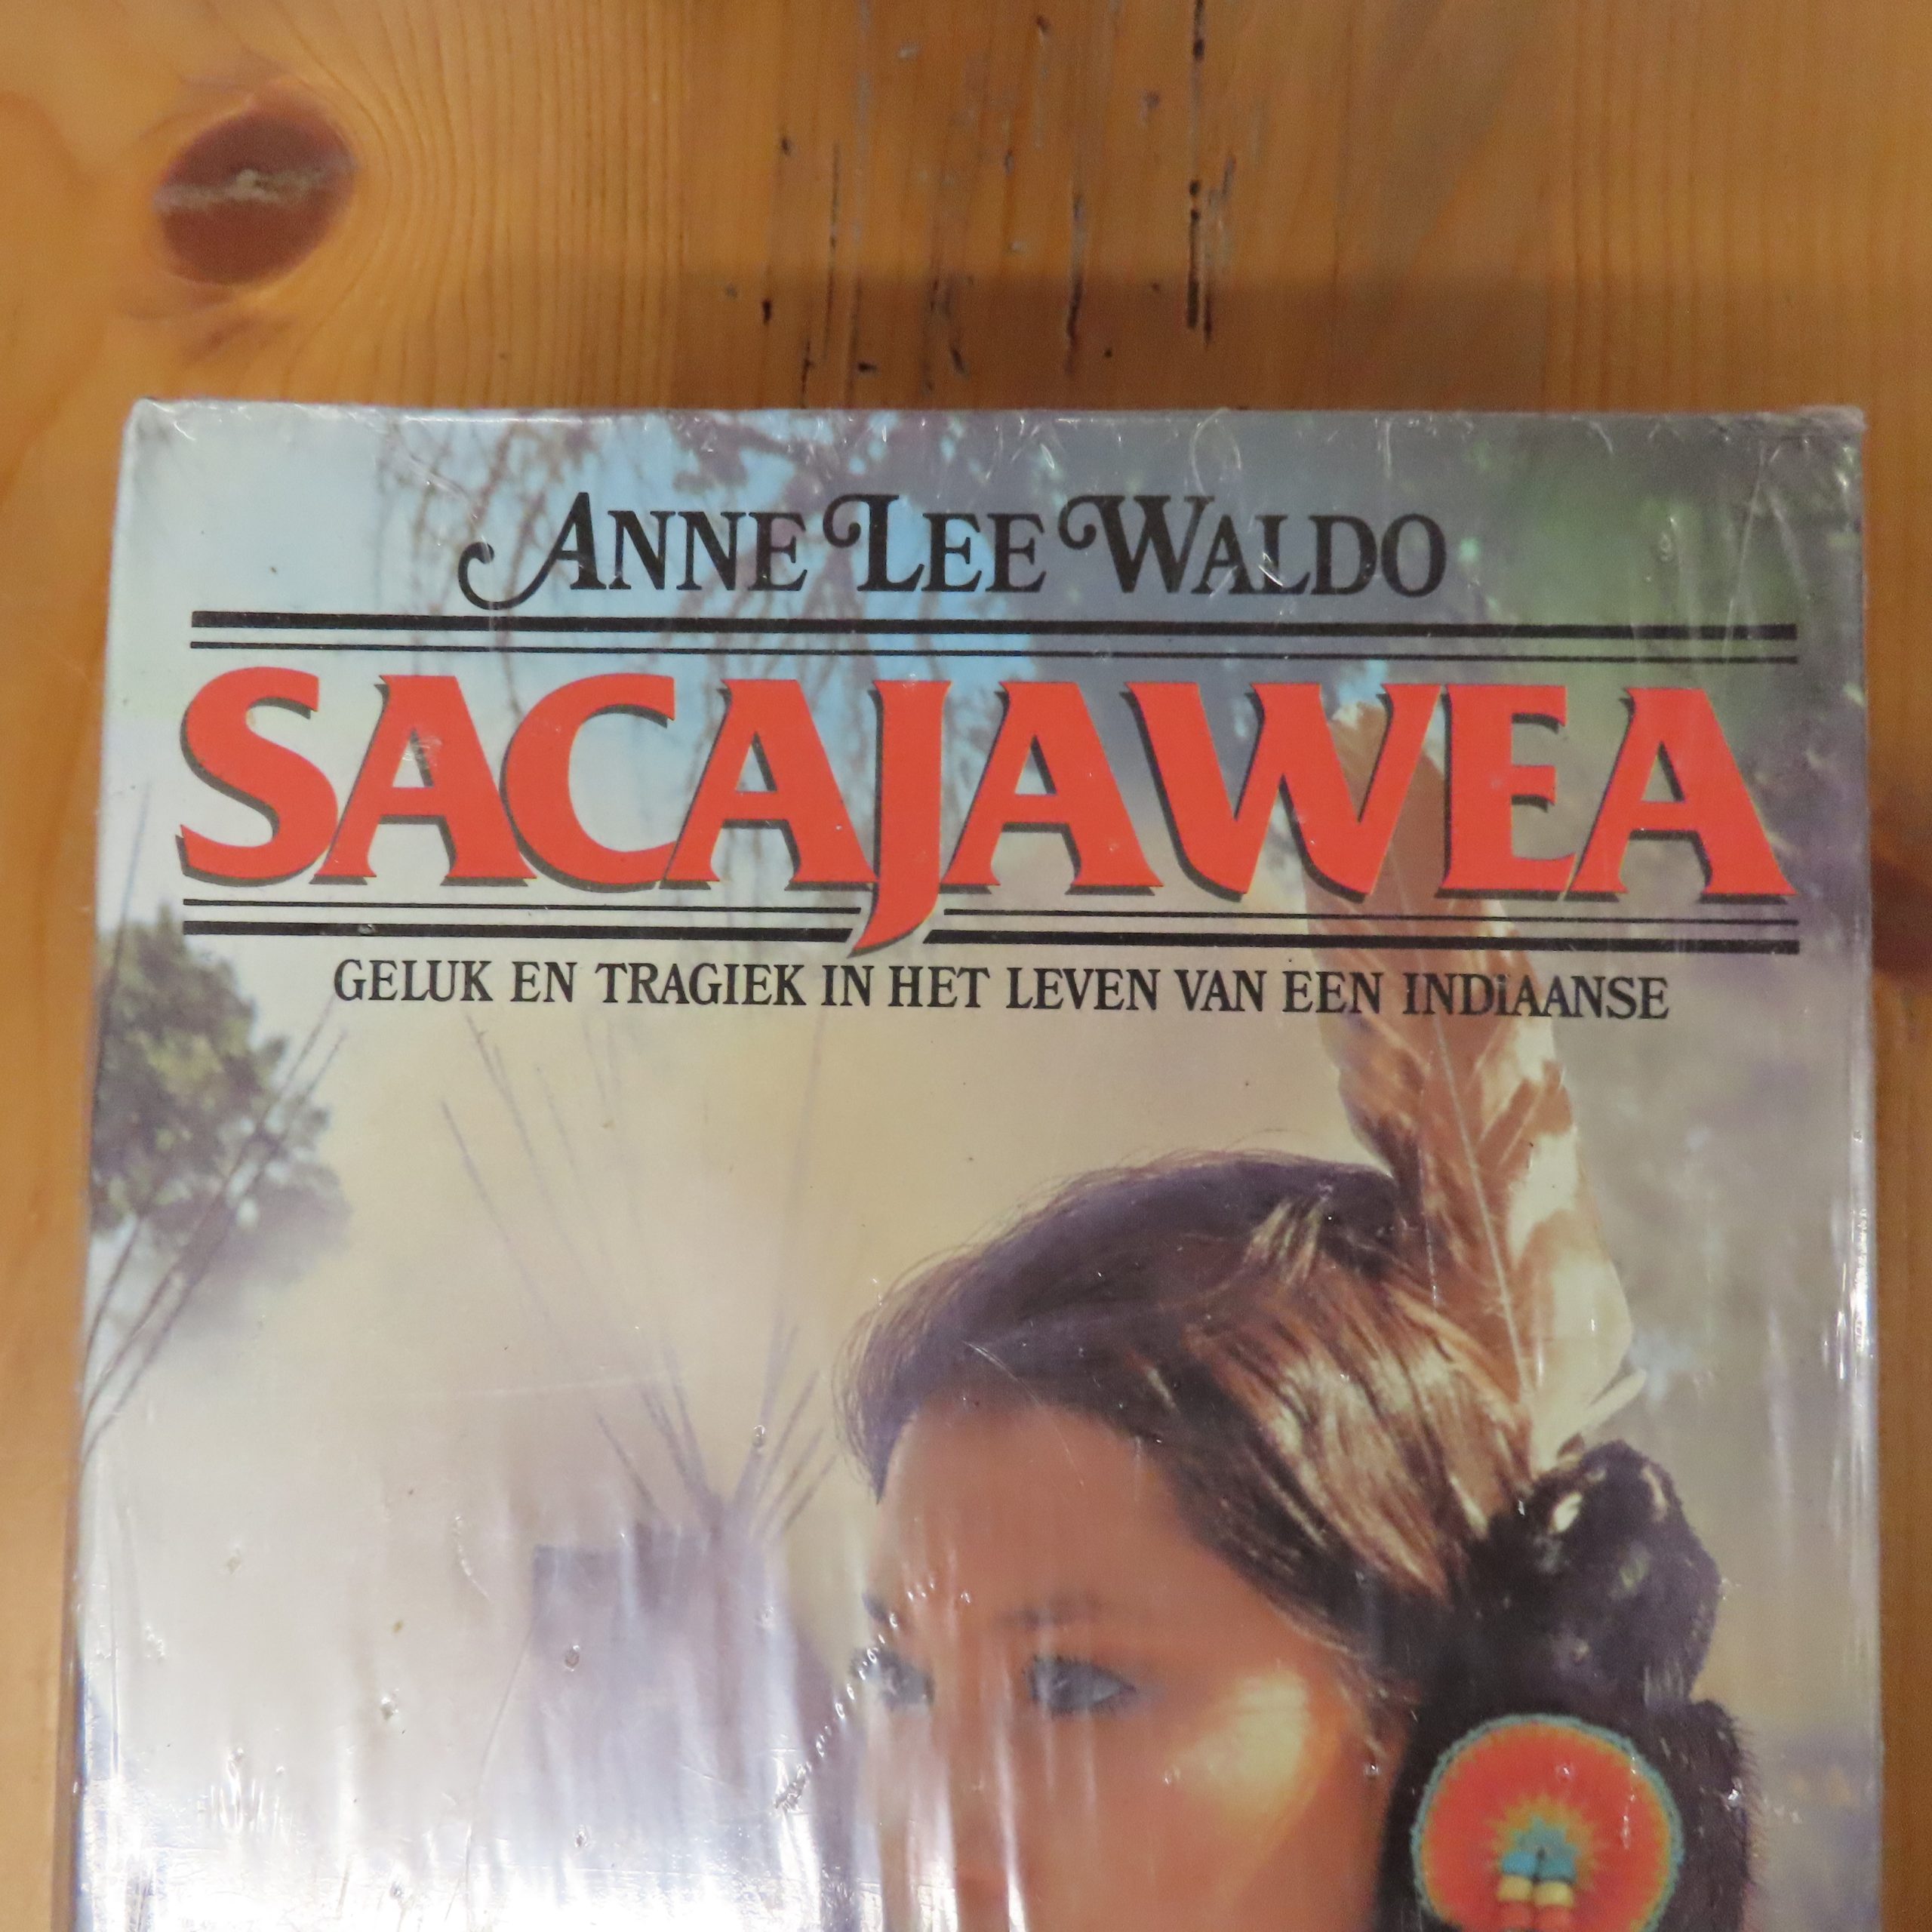 Boek “Sacajawea” van Anne Lee Waldo